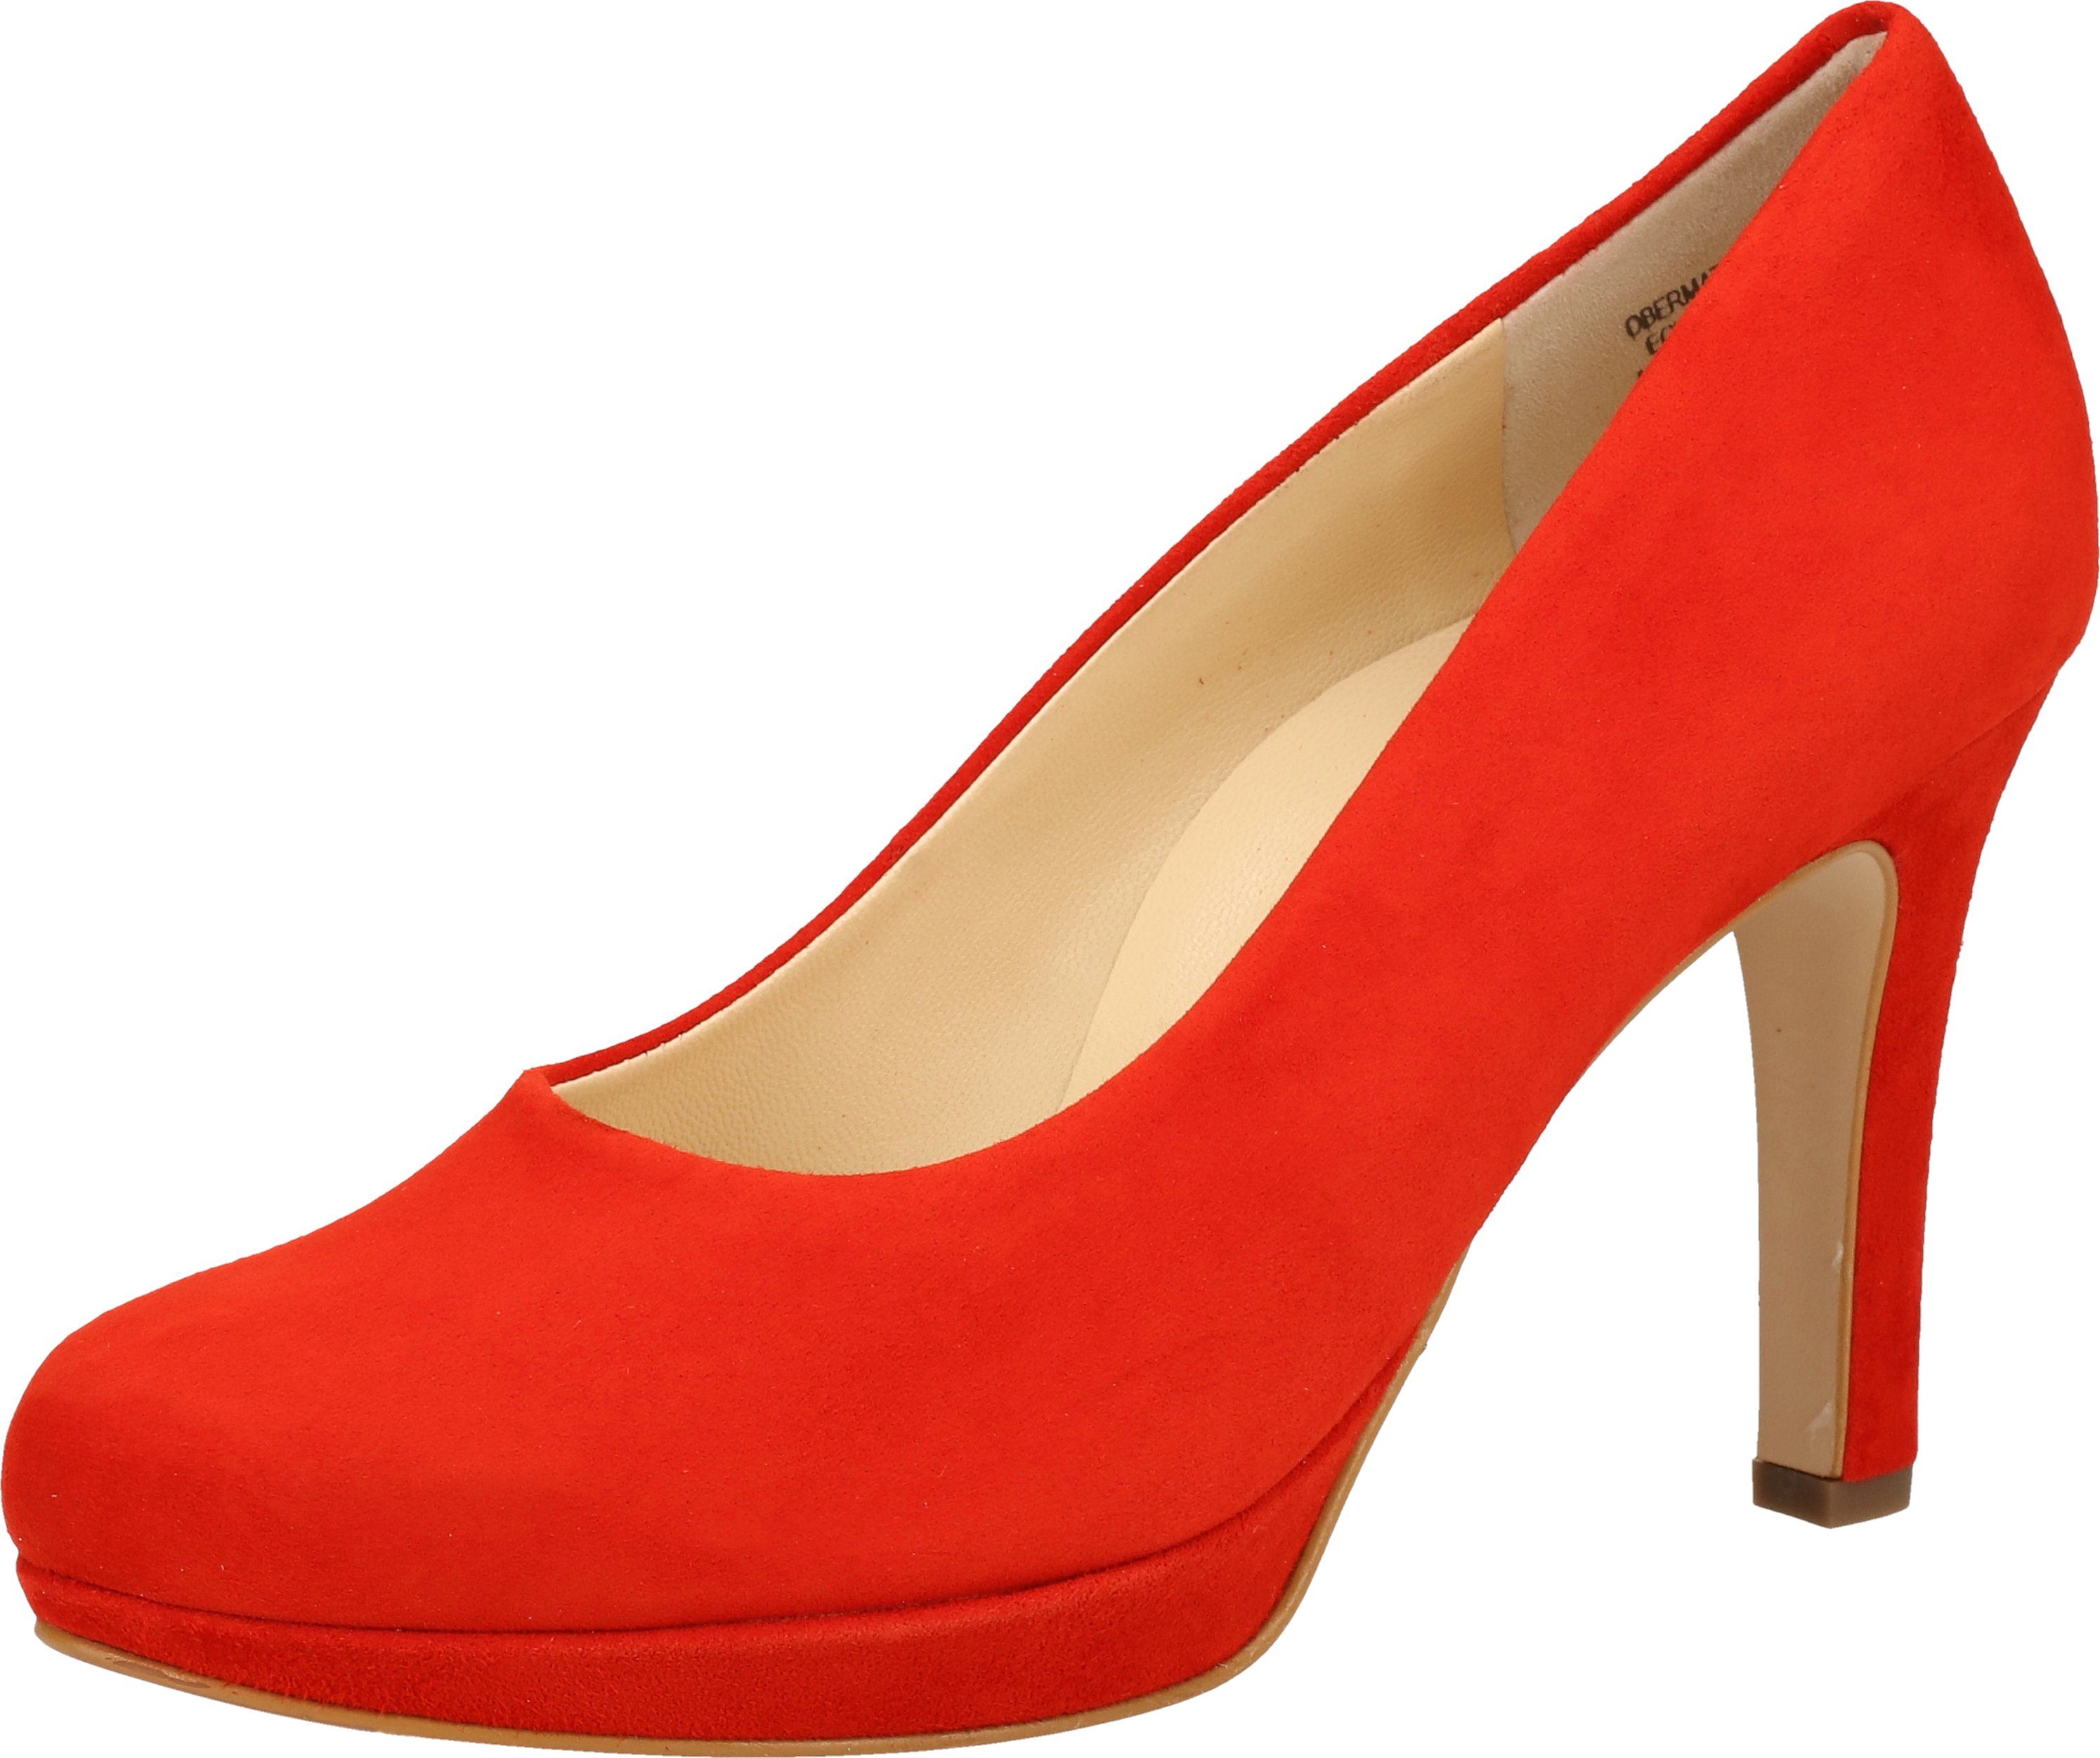 Rote Pumps » Stilettos online kaufen | OTTO